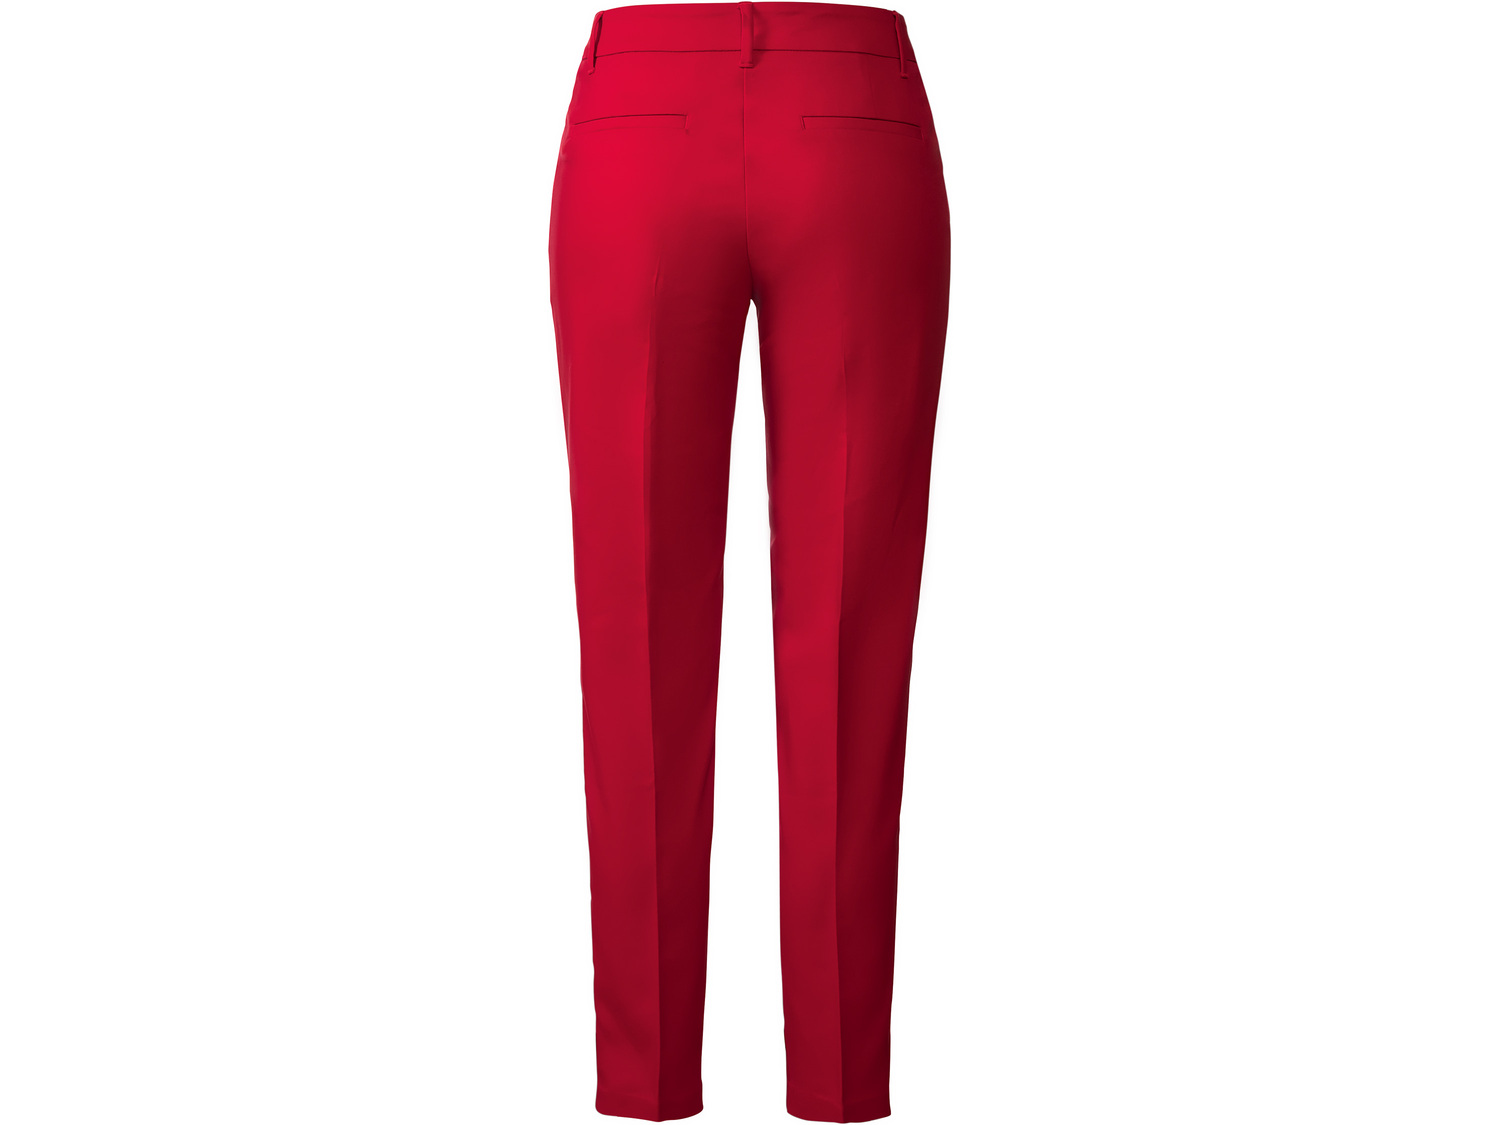 Spodnie damskie z bawełną Esmara, cena 44,99 PLN 
- rozmiary: 34-44
- z elastyczną ...